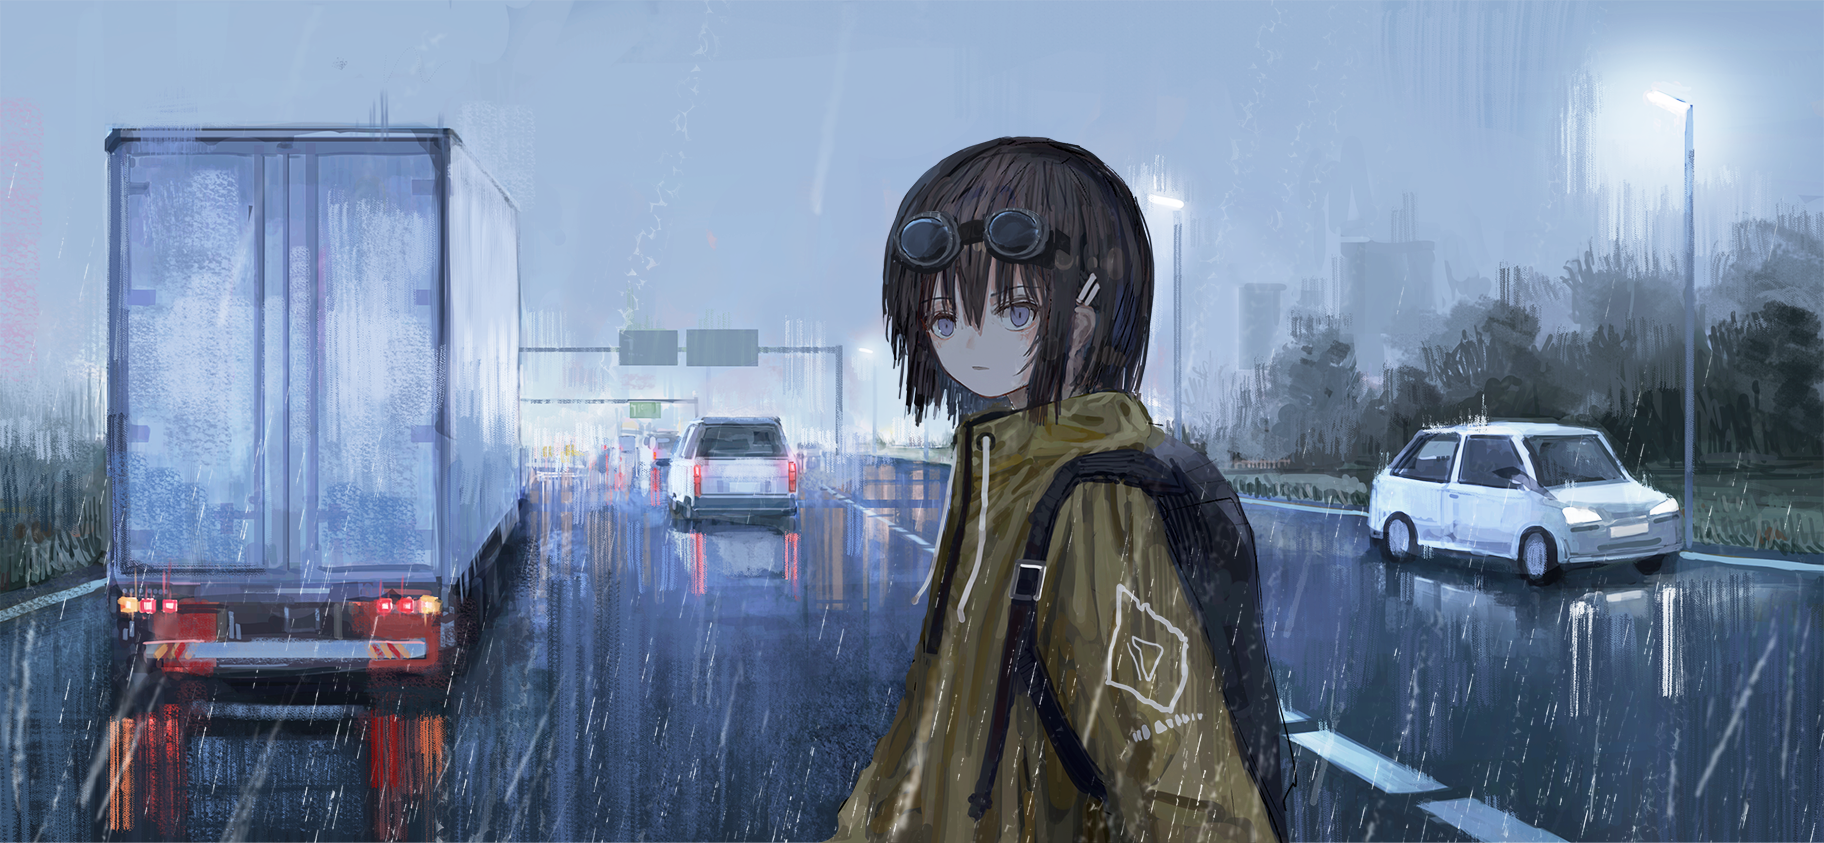 Anime 1824x843 anime anime girls digital art artwork 2D portrait rain road truck car women outdoors brunette traffic vehicle